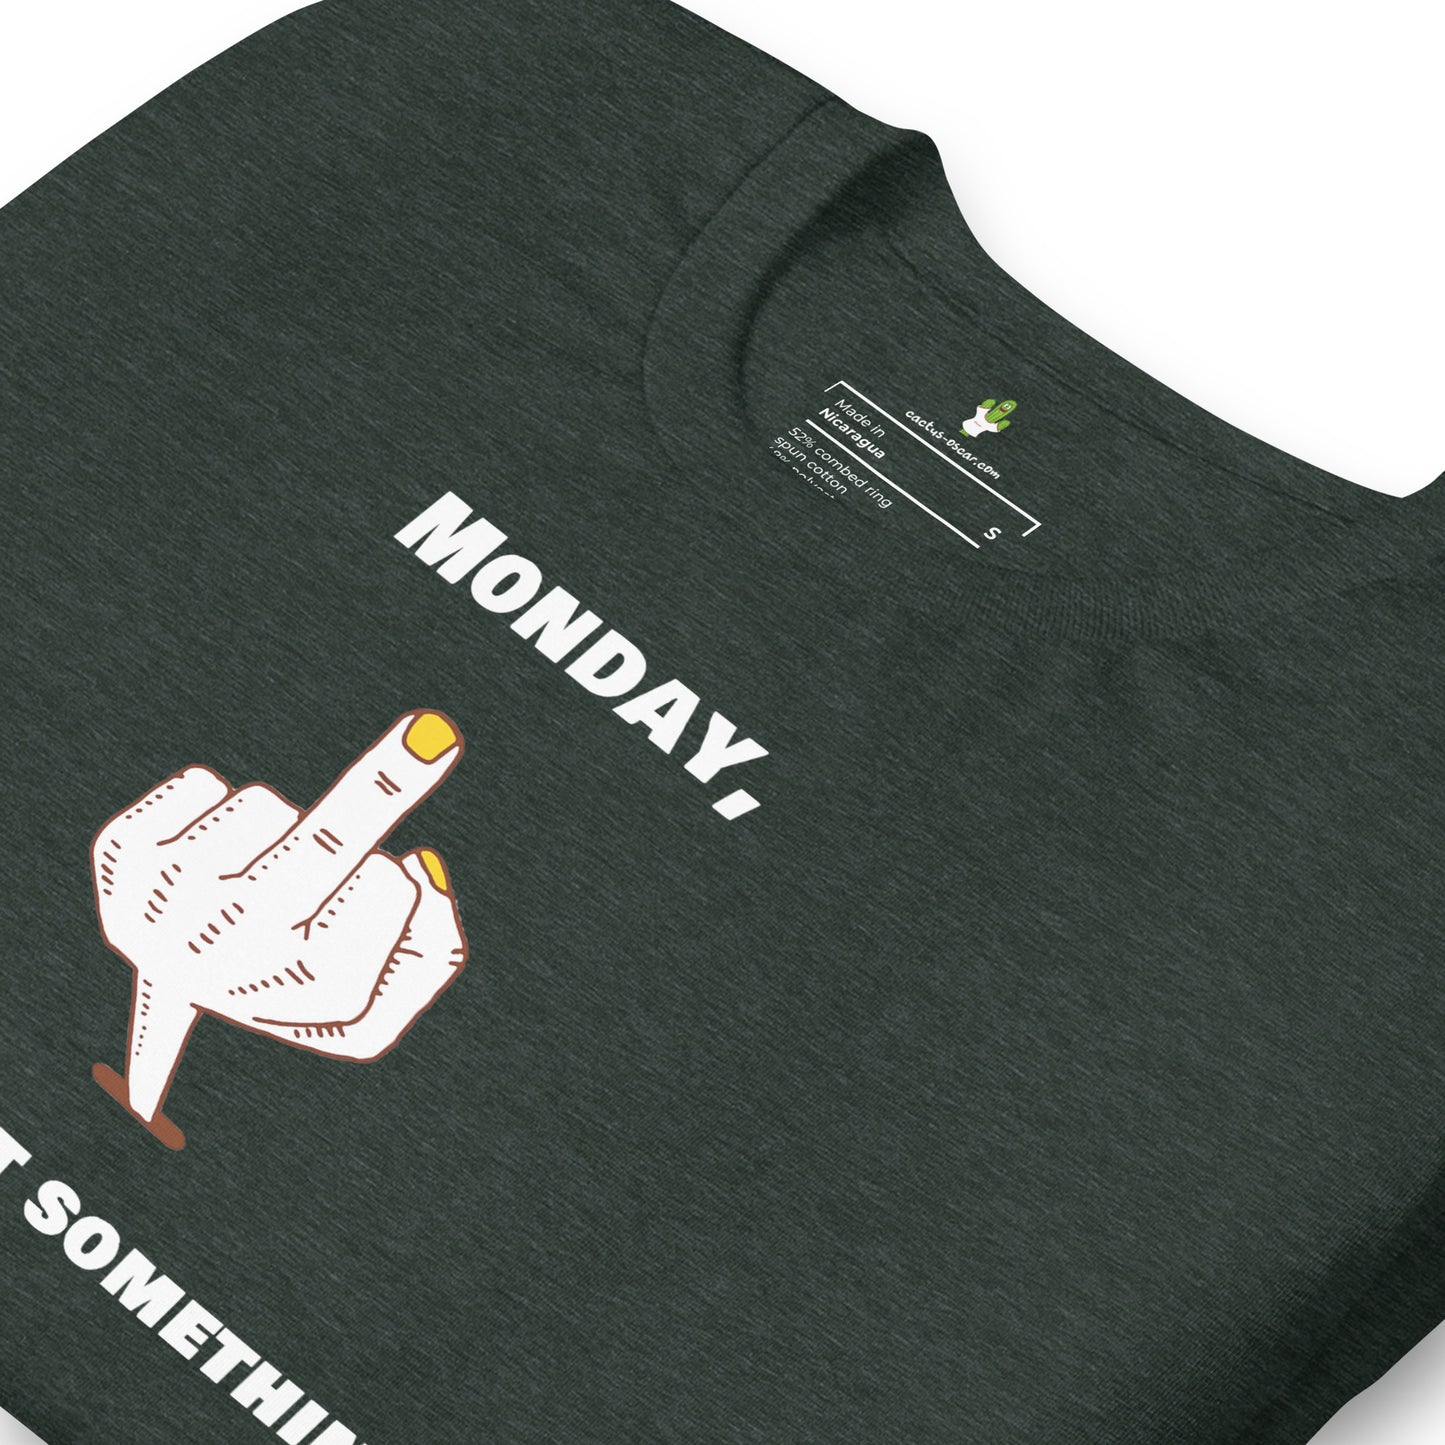 Unisex T-shirt "Monday, you forgot something" Black